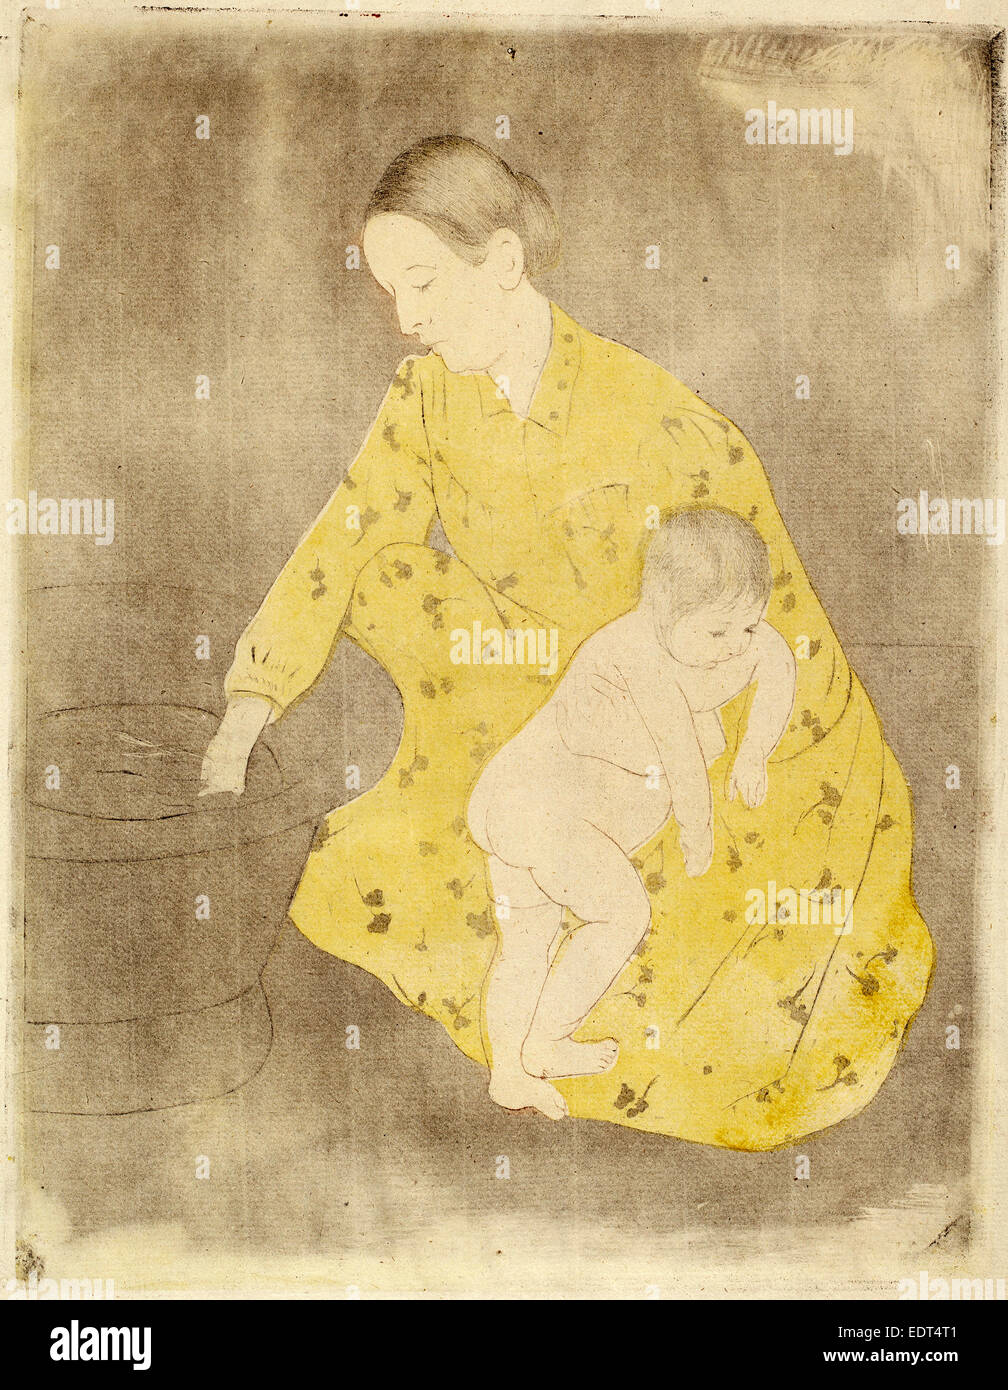 Mary Cassatt, la baignoire, cuisine américaine, 1844 - 1926, ch. 1891, pointe sèche et douce au sol-eau-forte en jaune, noir, et la sanguine Banque D'Images